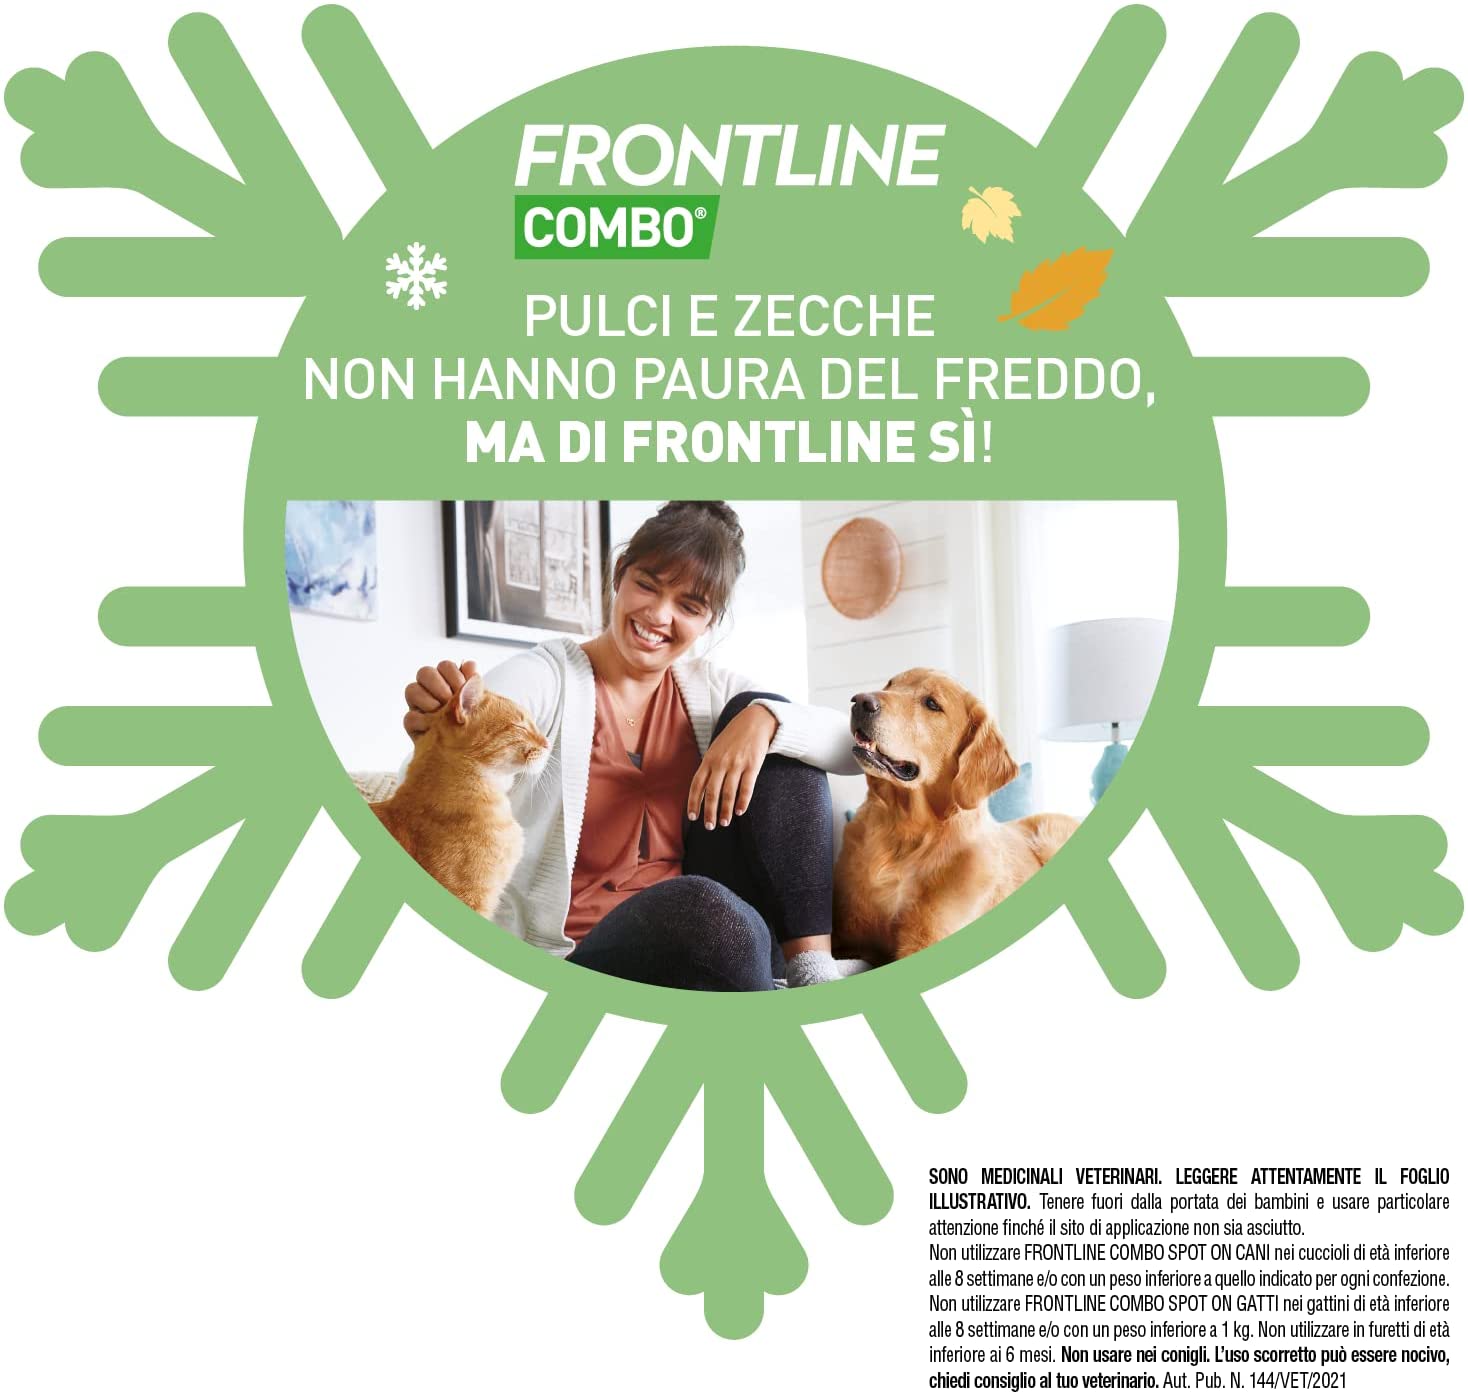 Antiparassitario Frontline Combo Spot-On Cani Piccoli 1 Pipetta